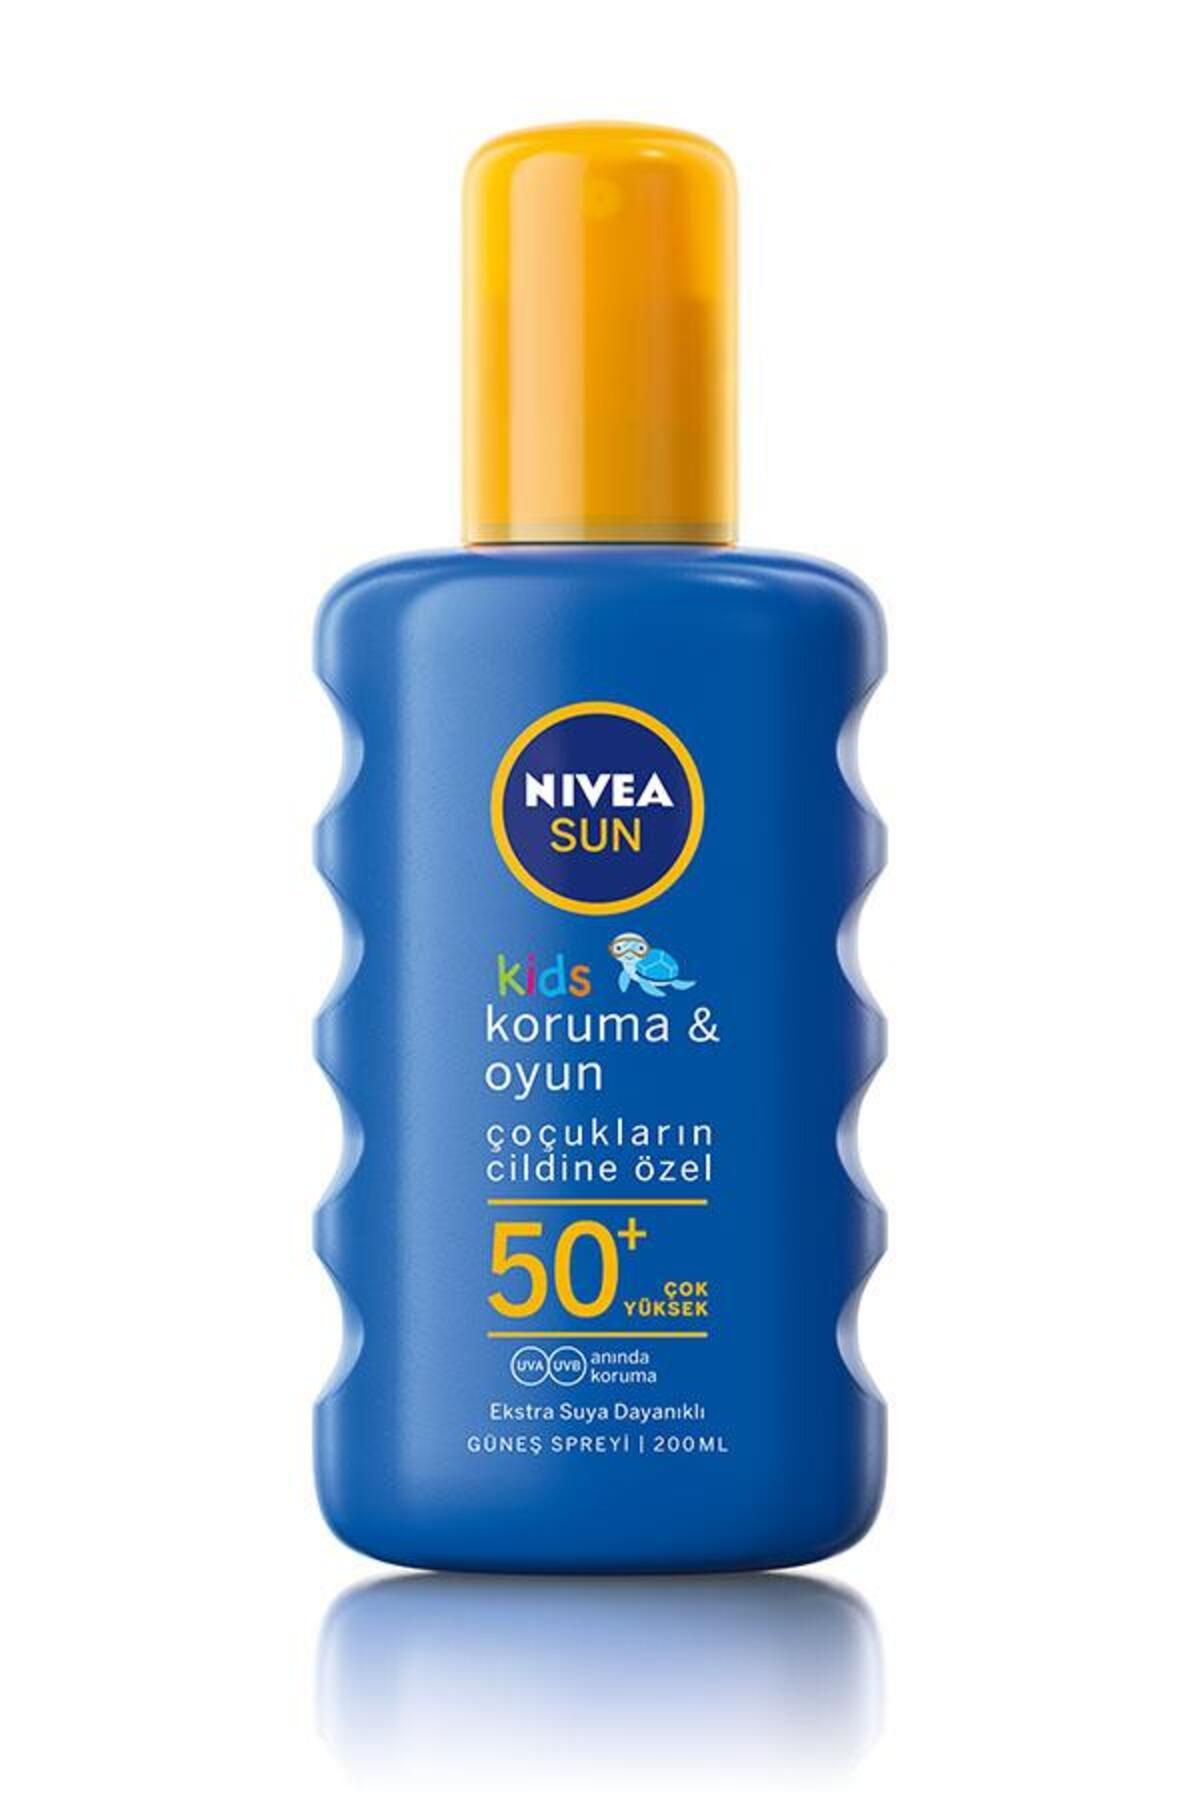 NIVEA Sun Kids Koruma & Oyun Spf 50 Güneş Spreyi 200 ml